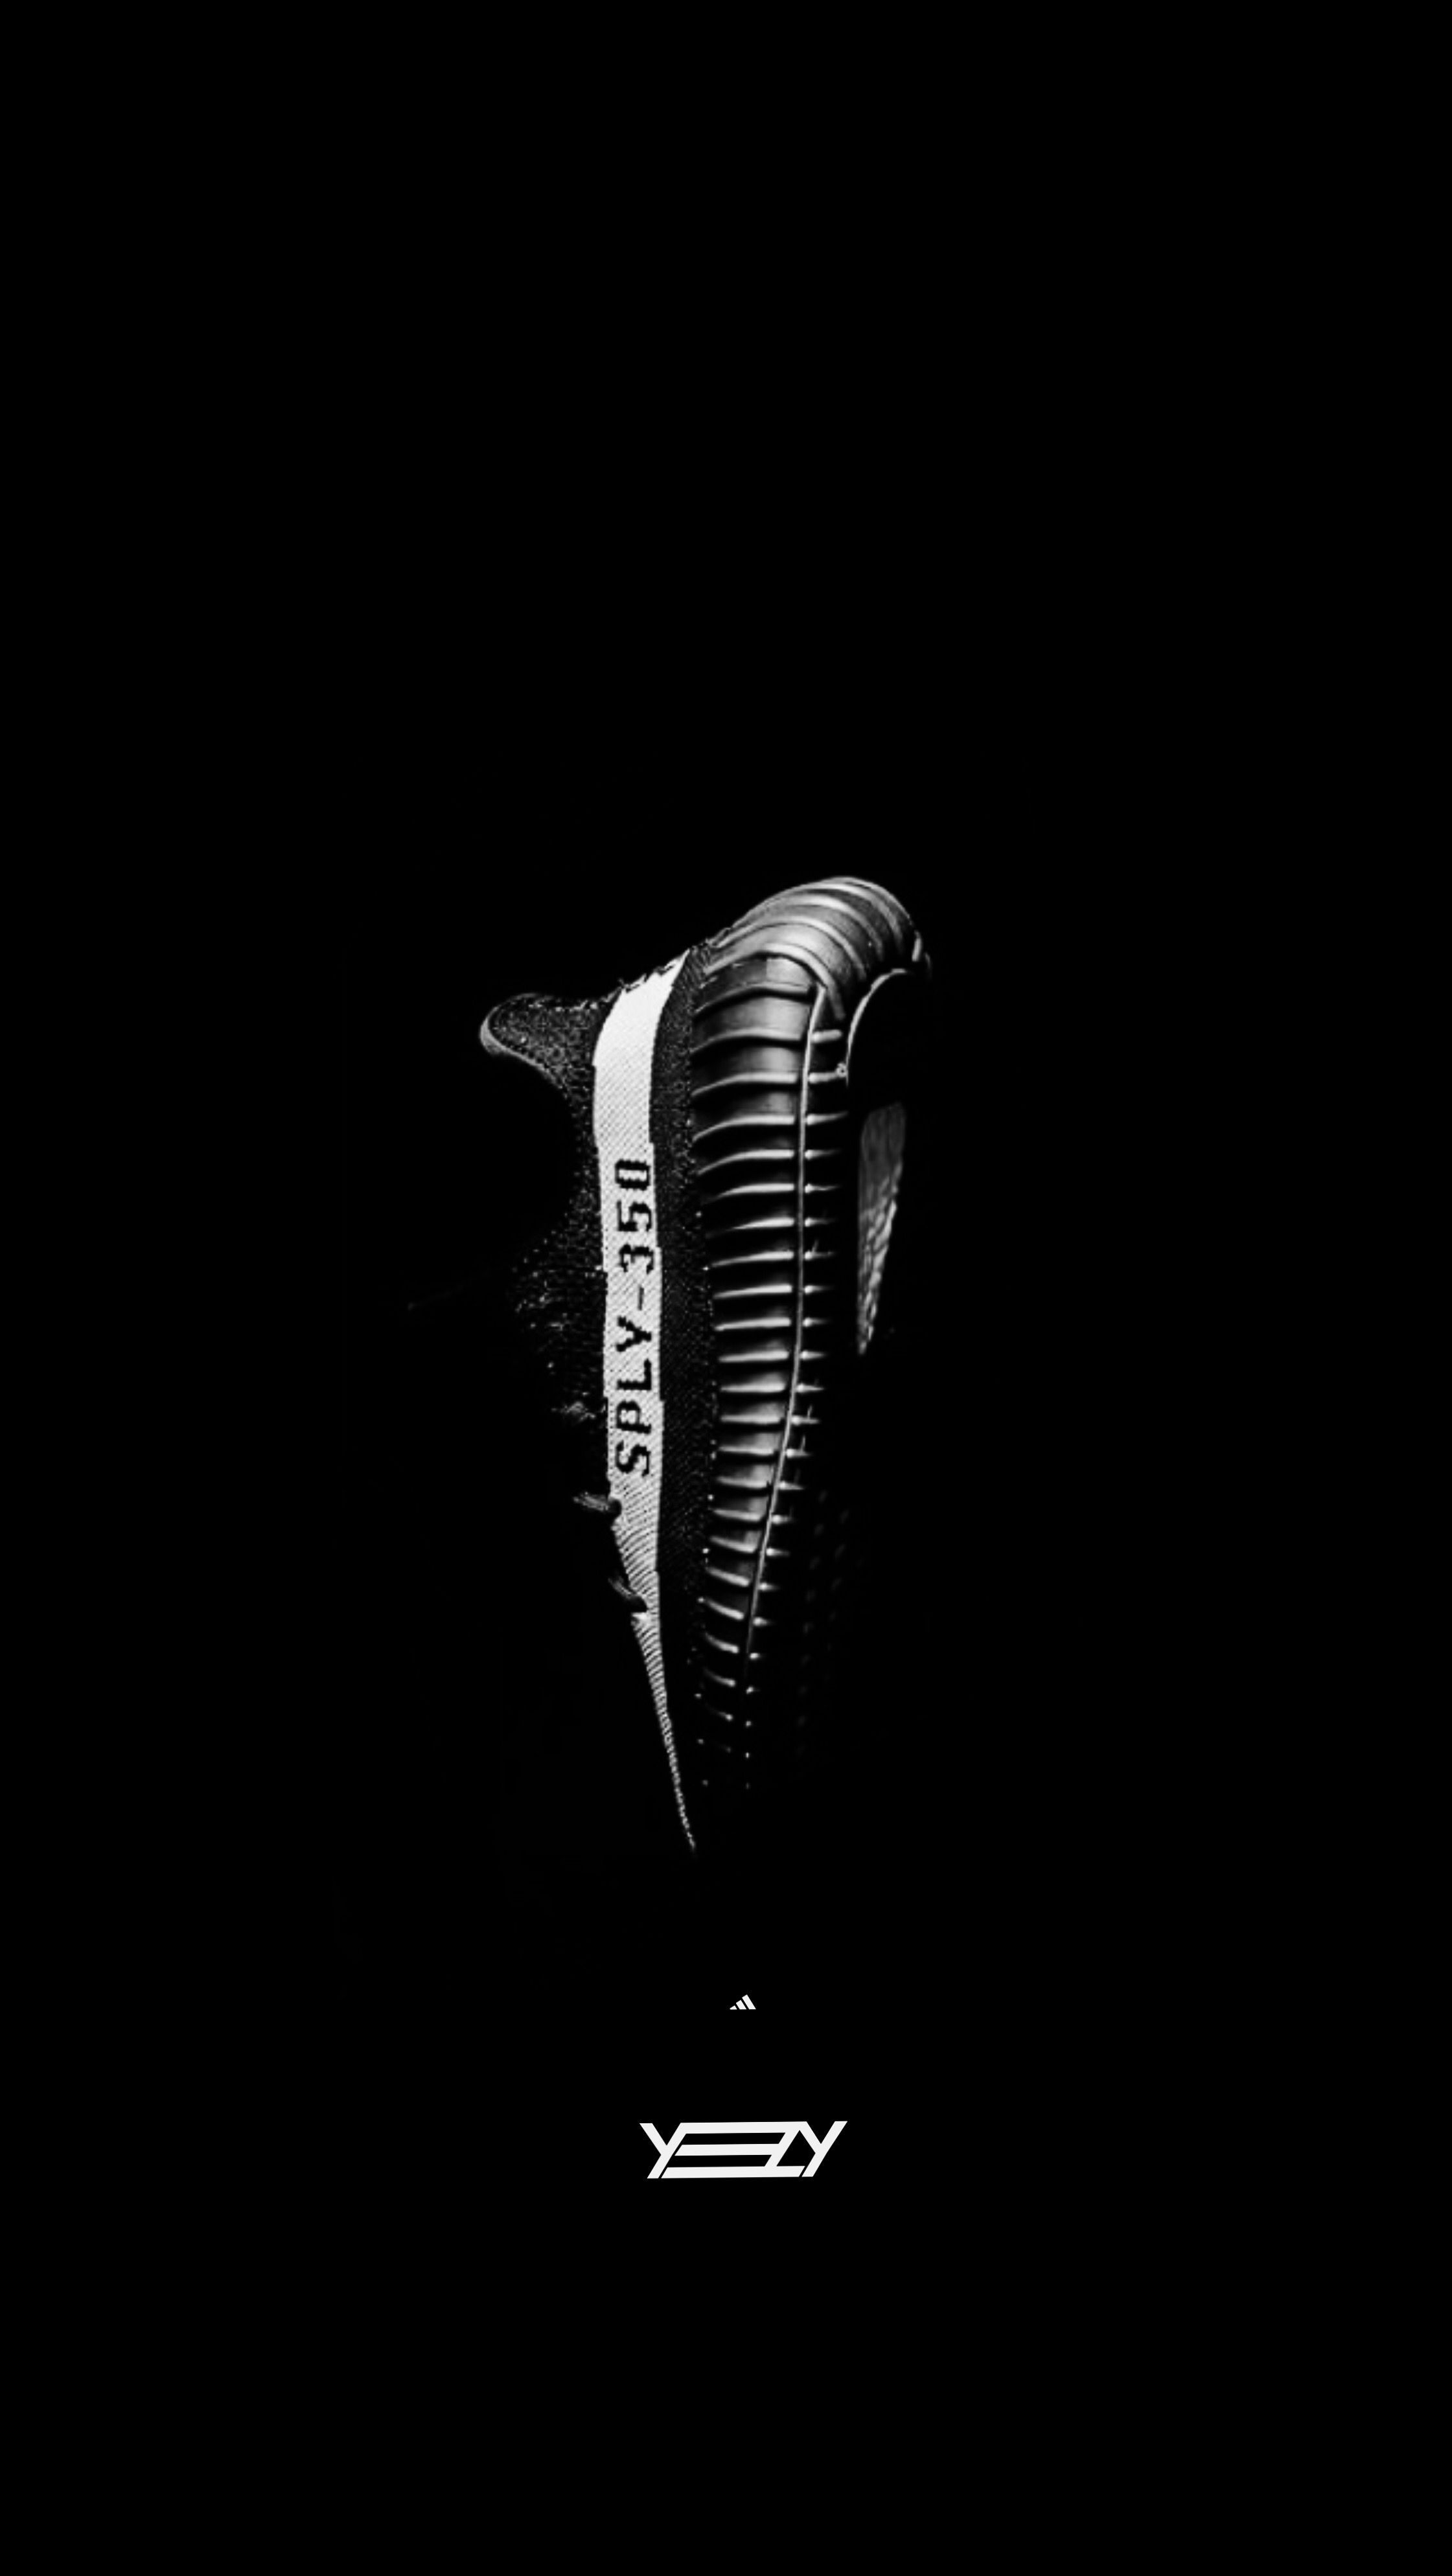 Wallpaper #Supreme #Yeezy #adidas adidas • Yeezy • Supreme